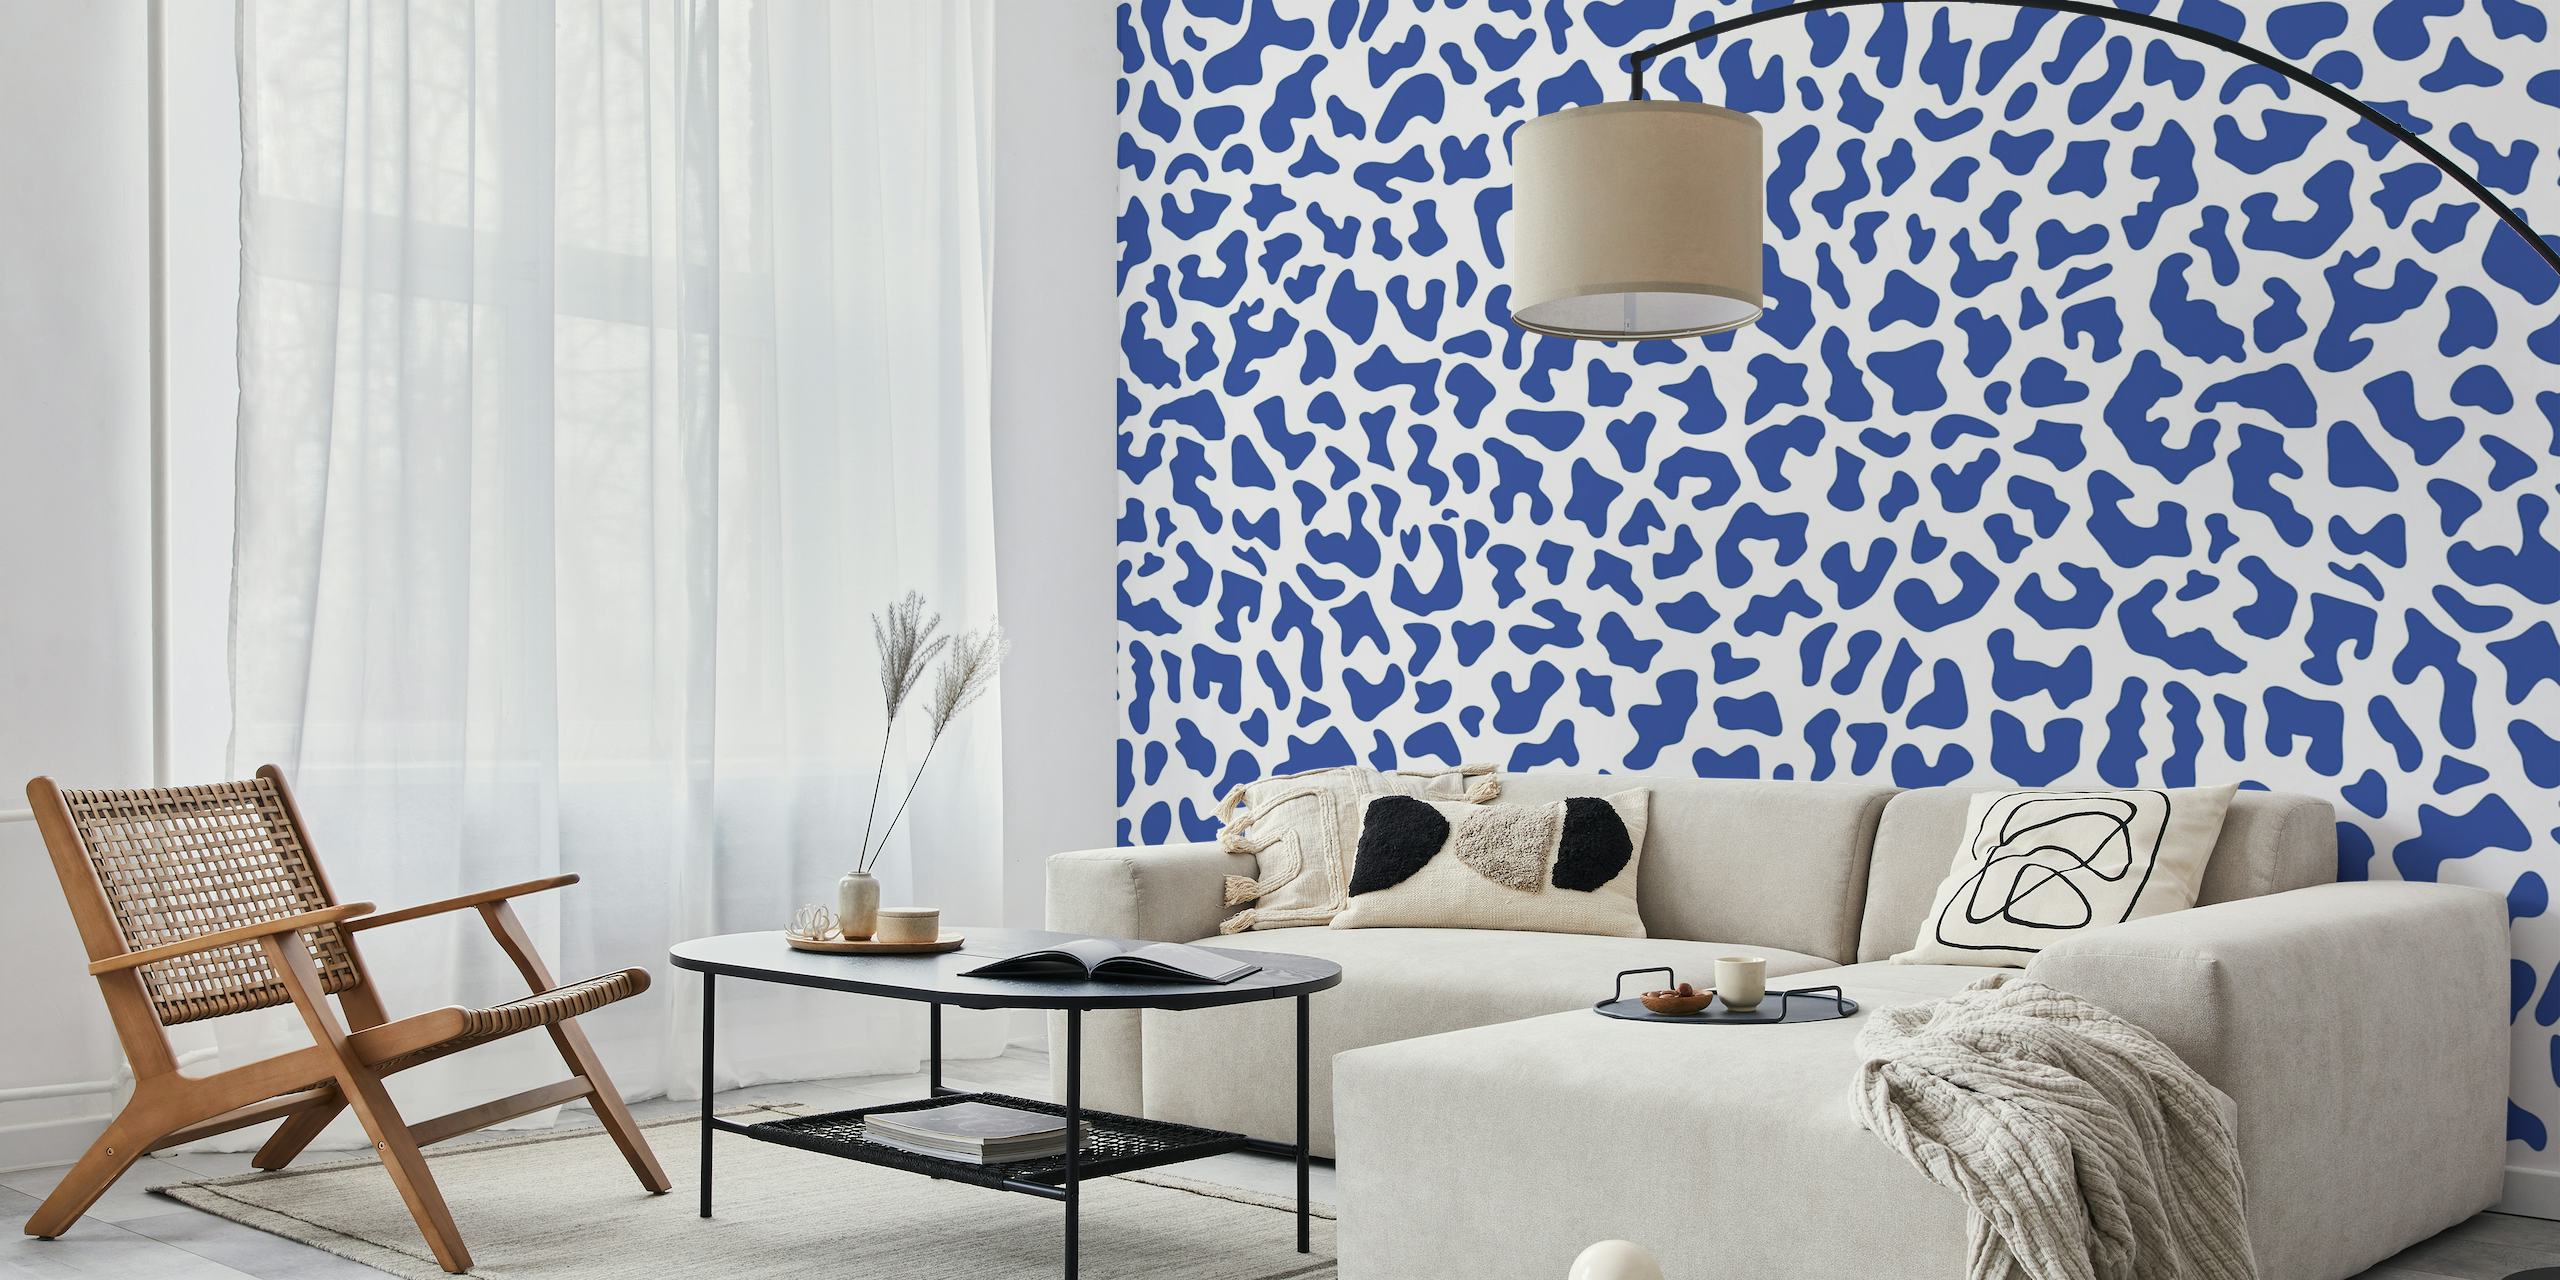 Fotomural vinílico de parede com estampa de leopardo azul e branco